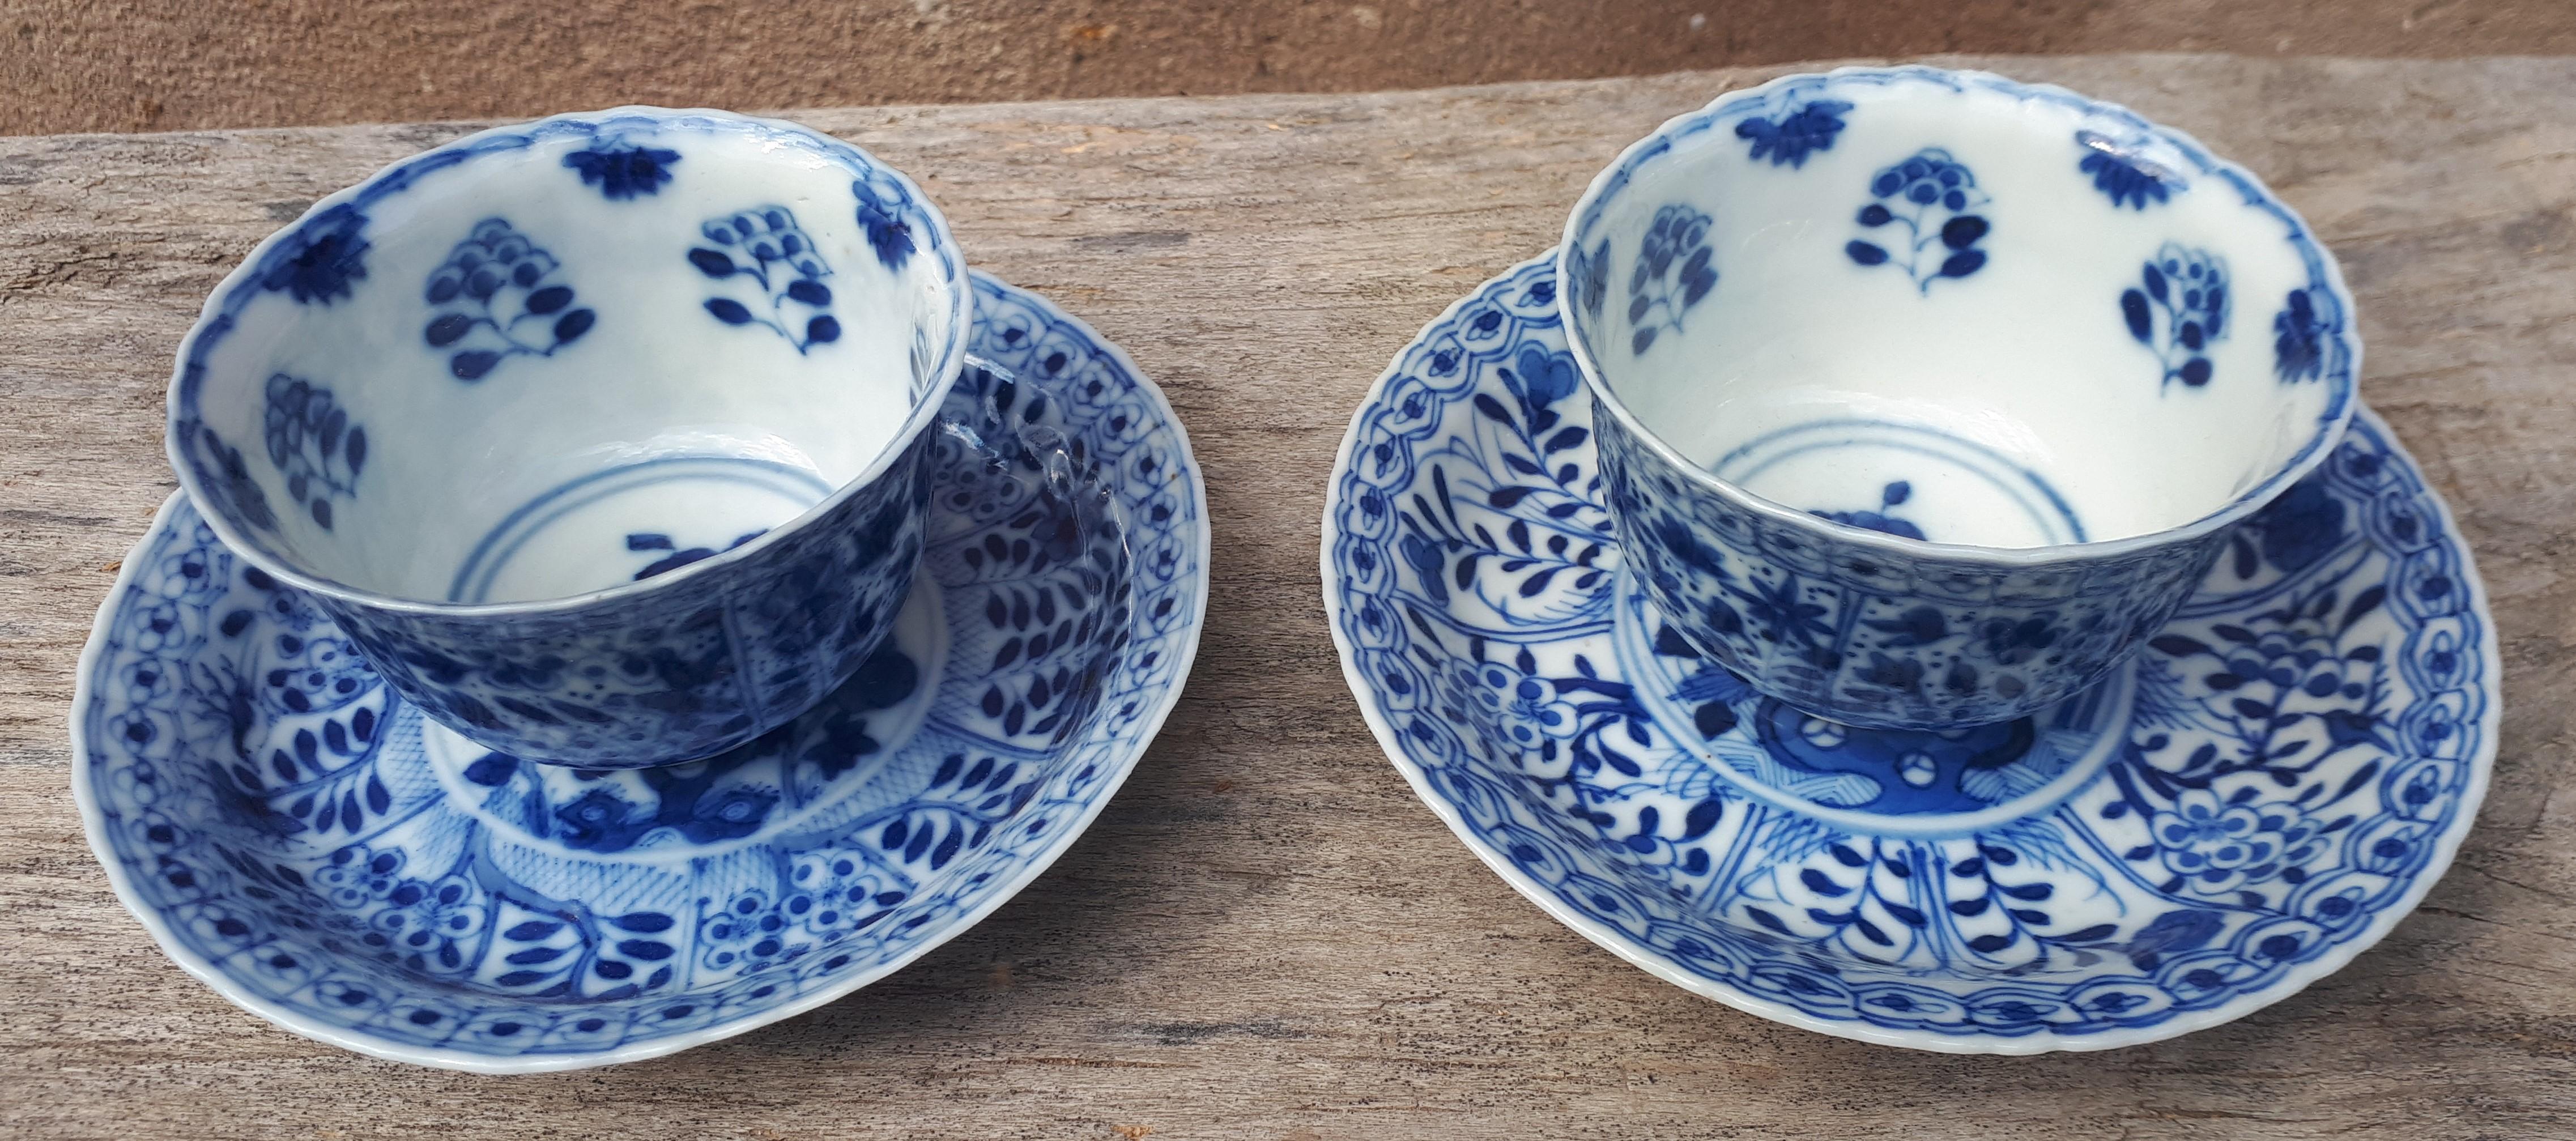 Paire de tasses et de soucoupes lobées en consoles, avec un bord légèrement évasé, décor floral en bleu sous glaçure. En parfait état !
Chine, période Kangxi.

NB : les dimensions indiquées sont celles des gobelets.